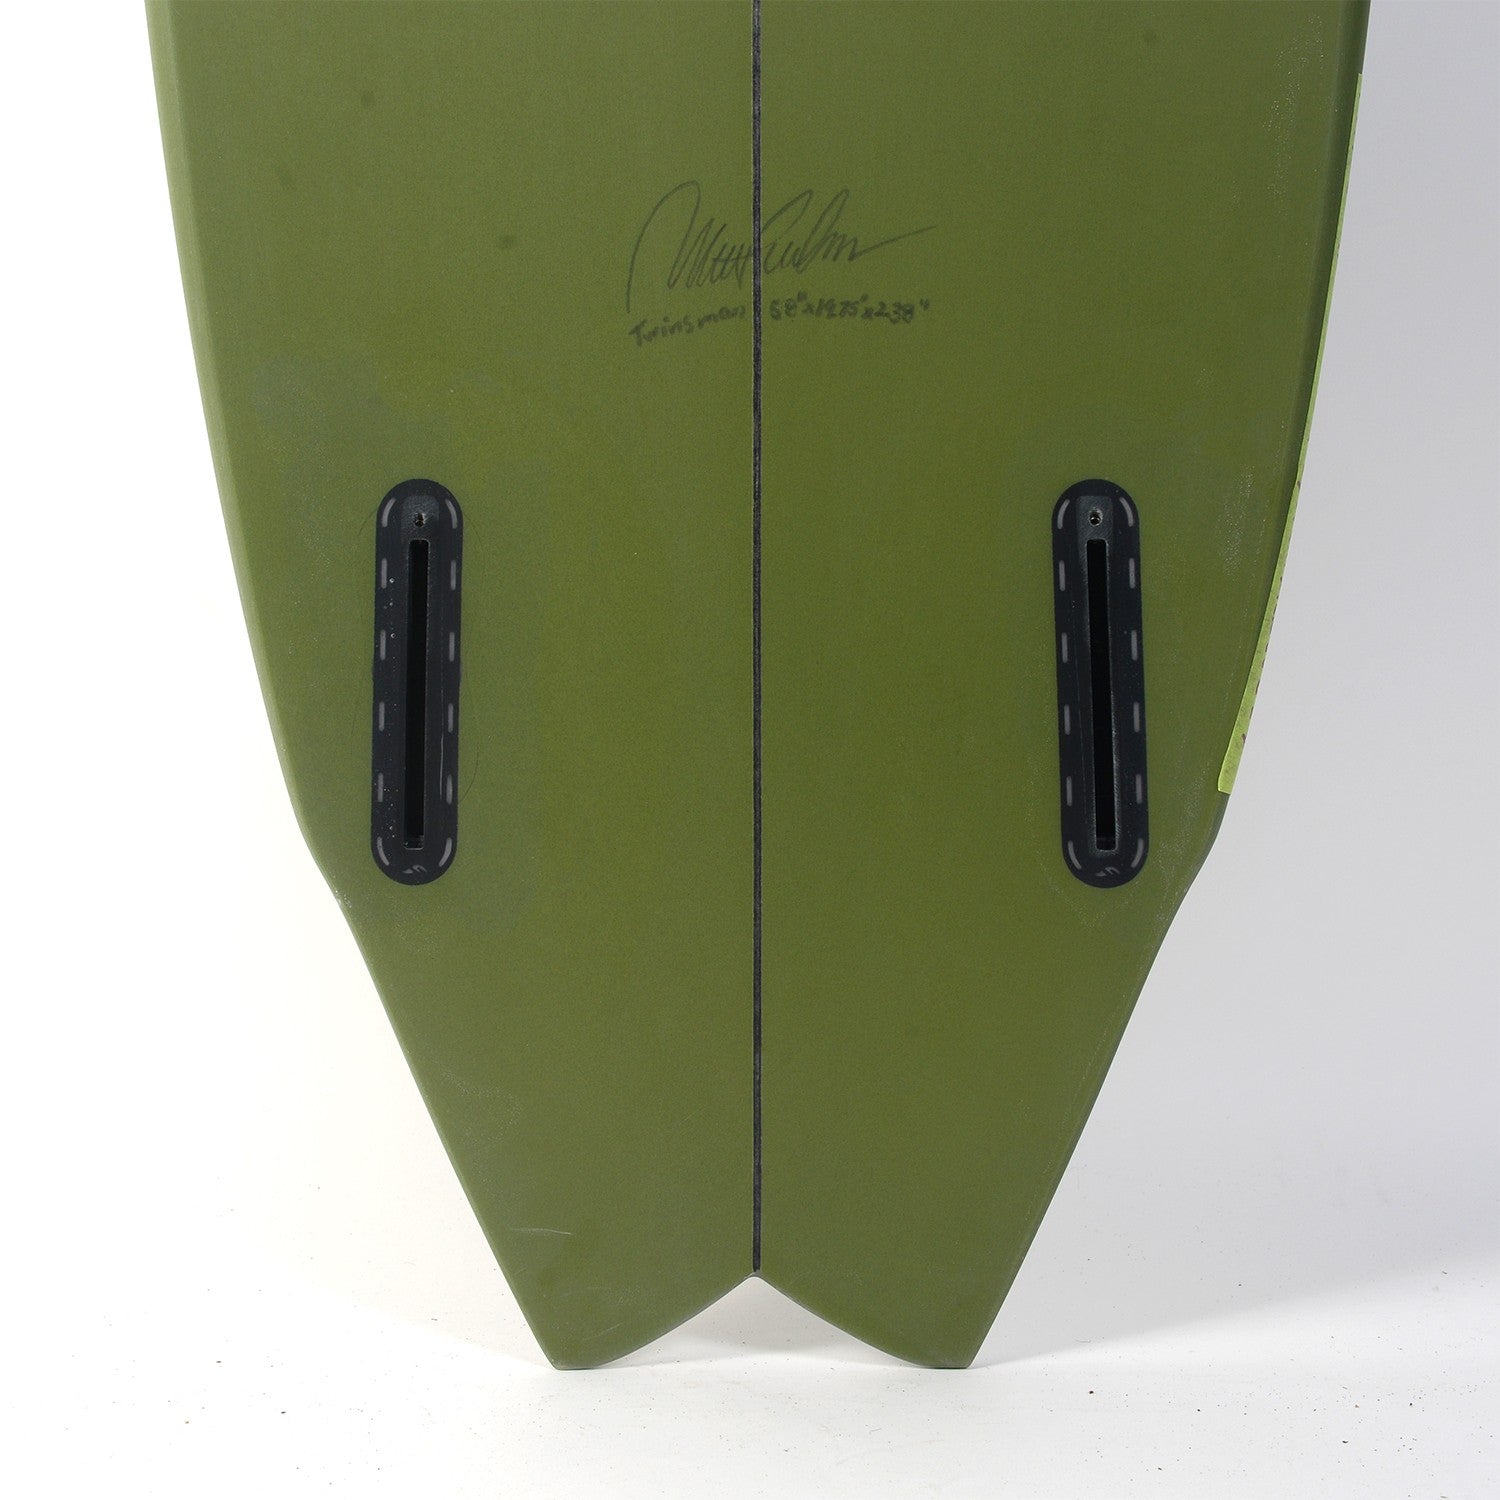 ALBUM Surfboards - Twinsman 5'8 (PU) - Army Green